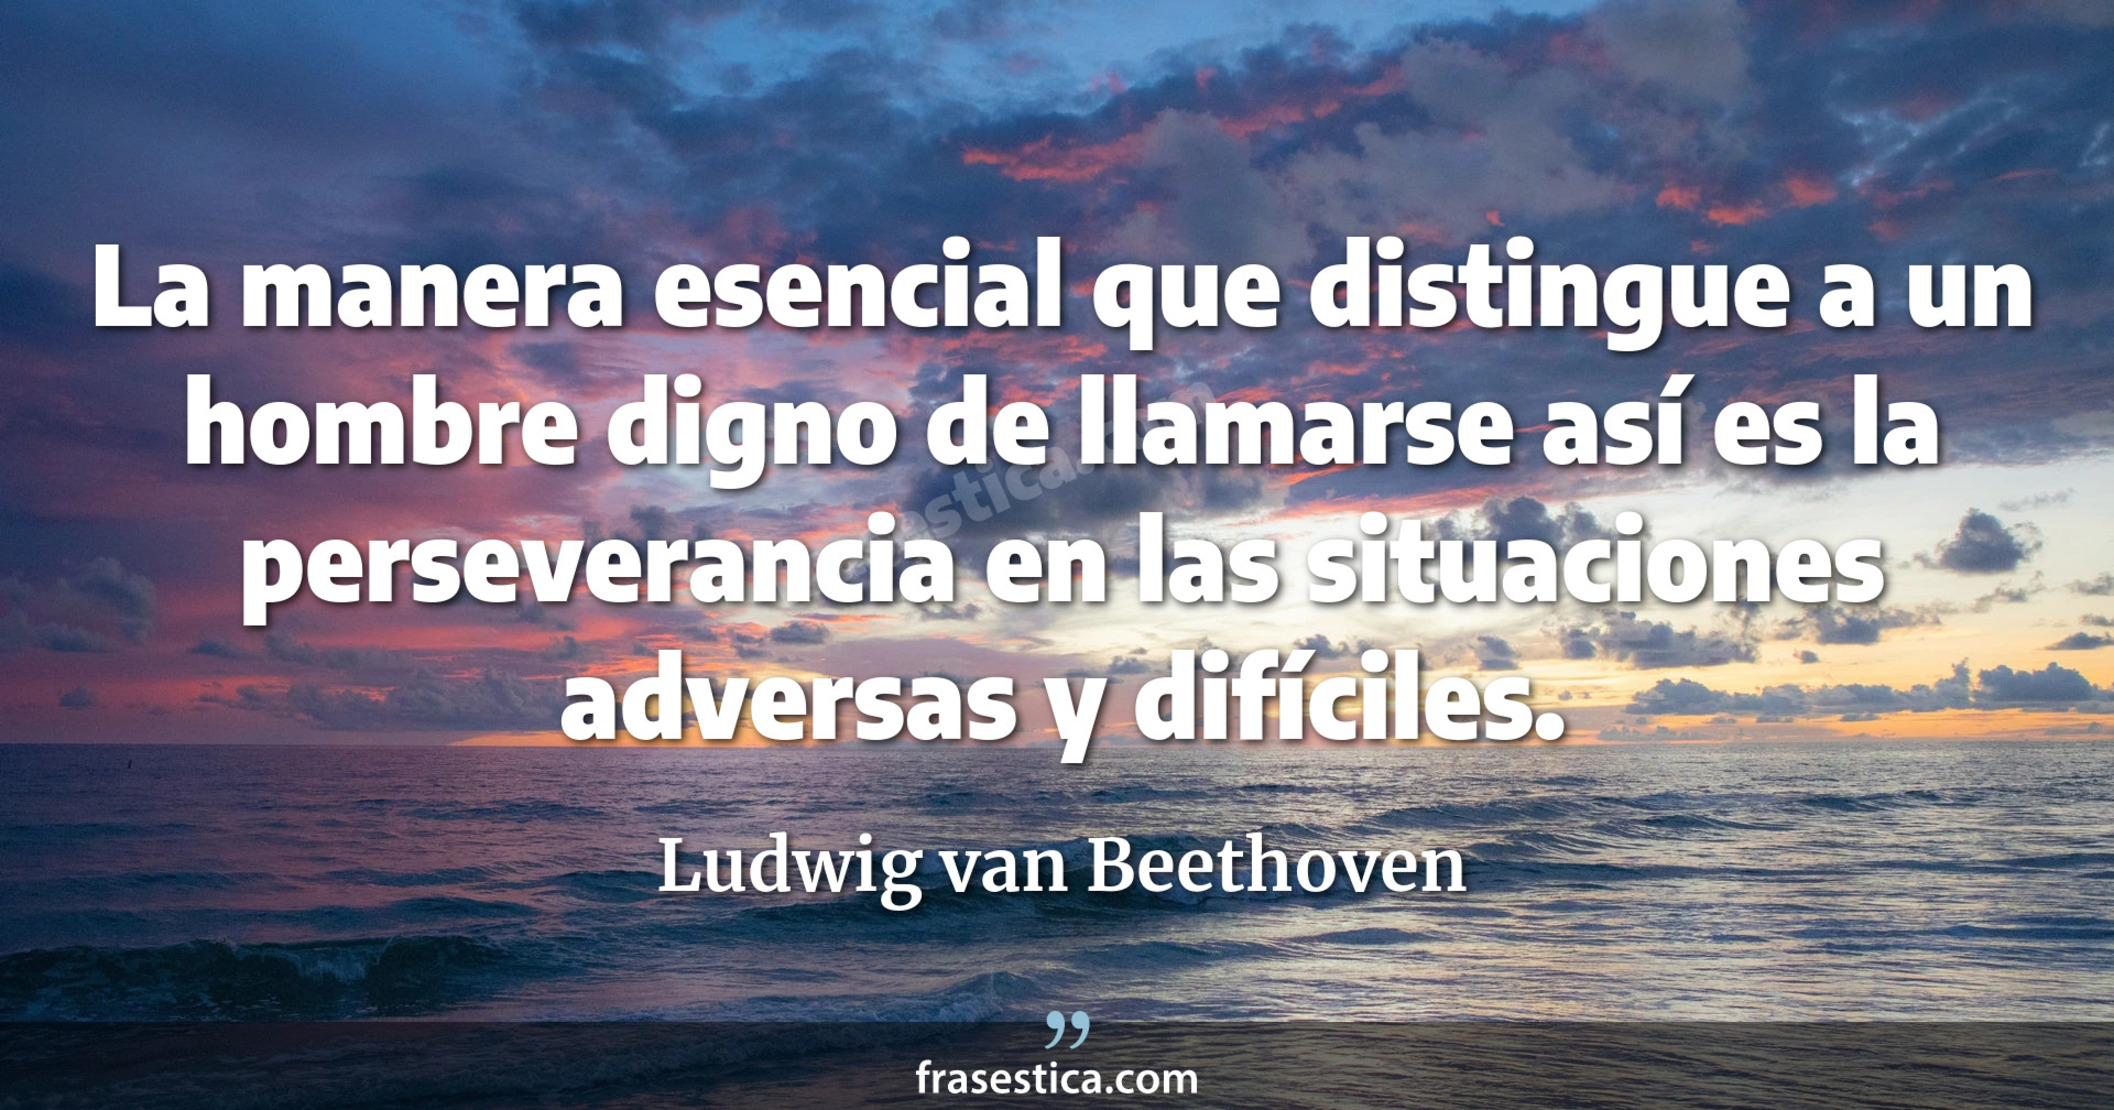 La manera esencial que distingue a un hombre digno de llamarse así es la perseverancia en las situaciones adversas y difíciles. - Ludwig van Beethoven